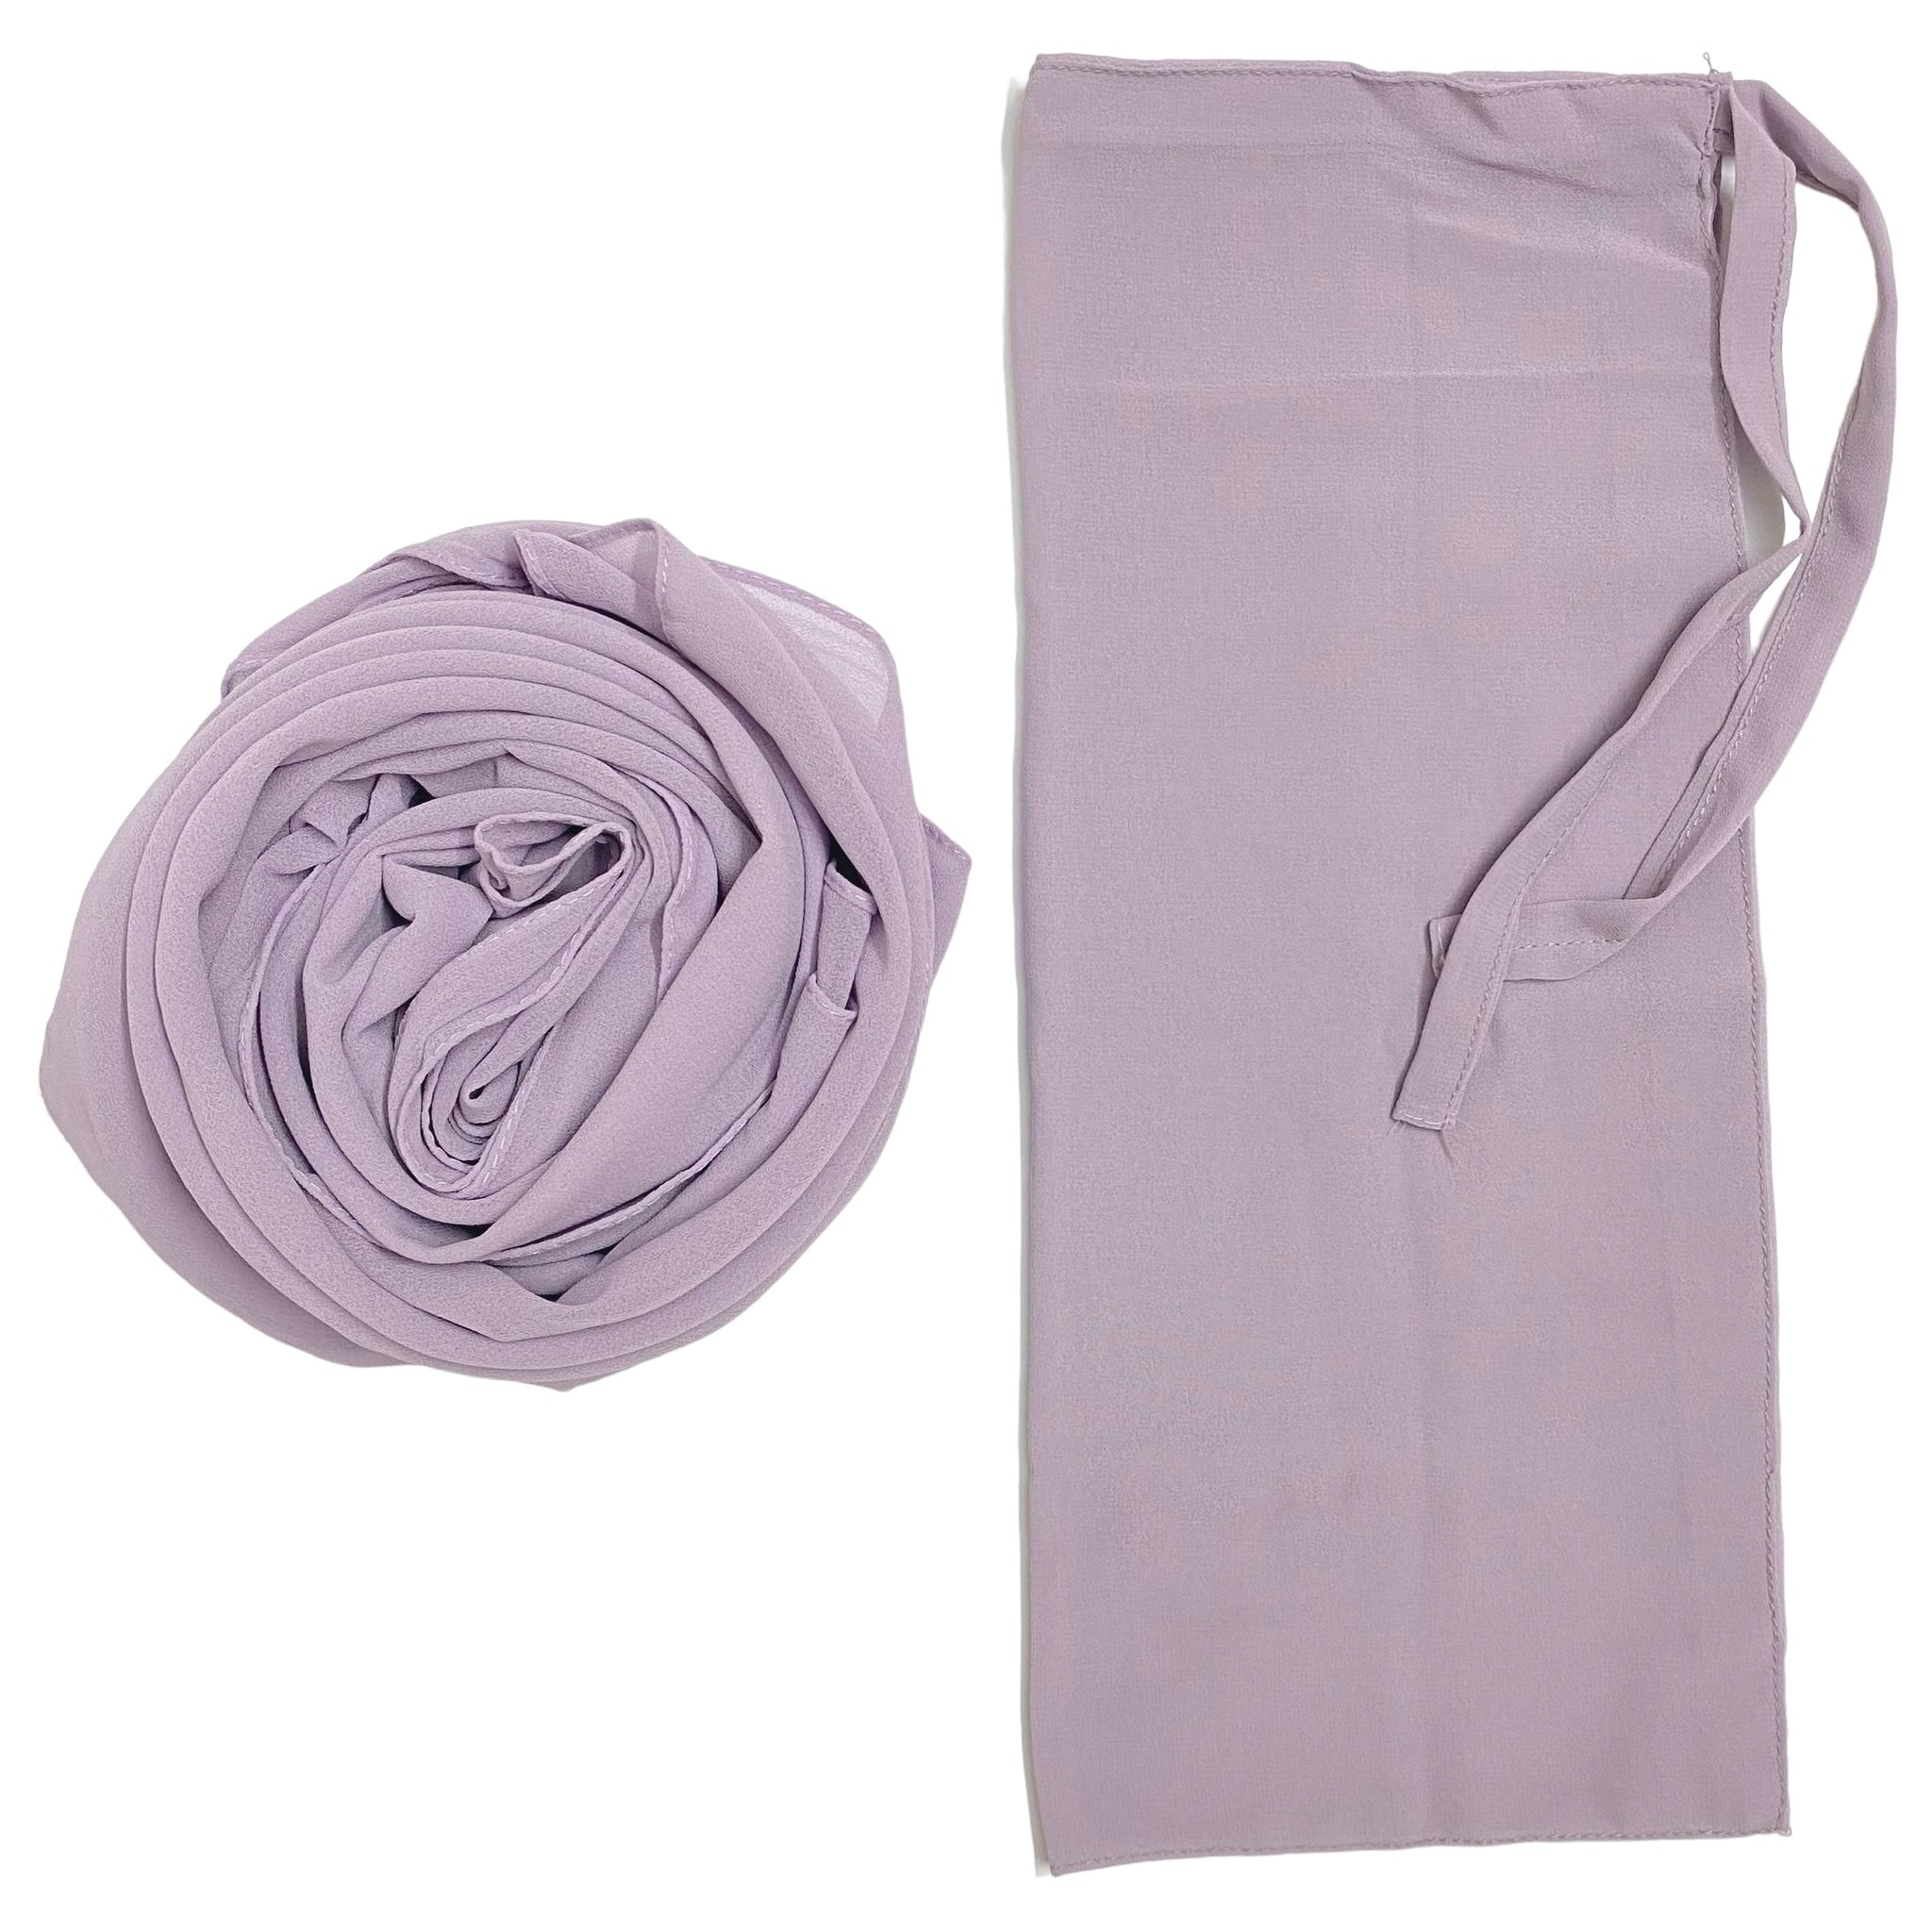 Matching Hijab & Niqab Sets - Dusty Lavender